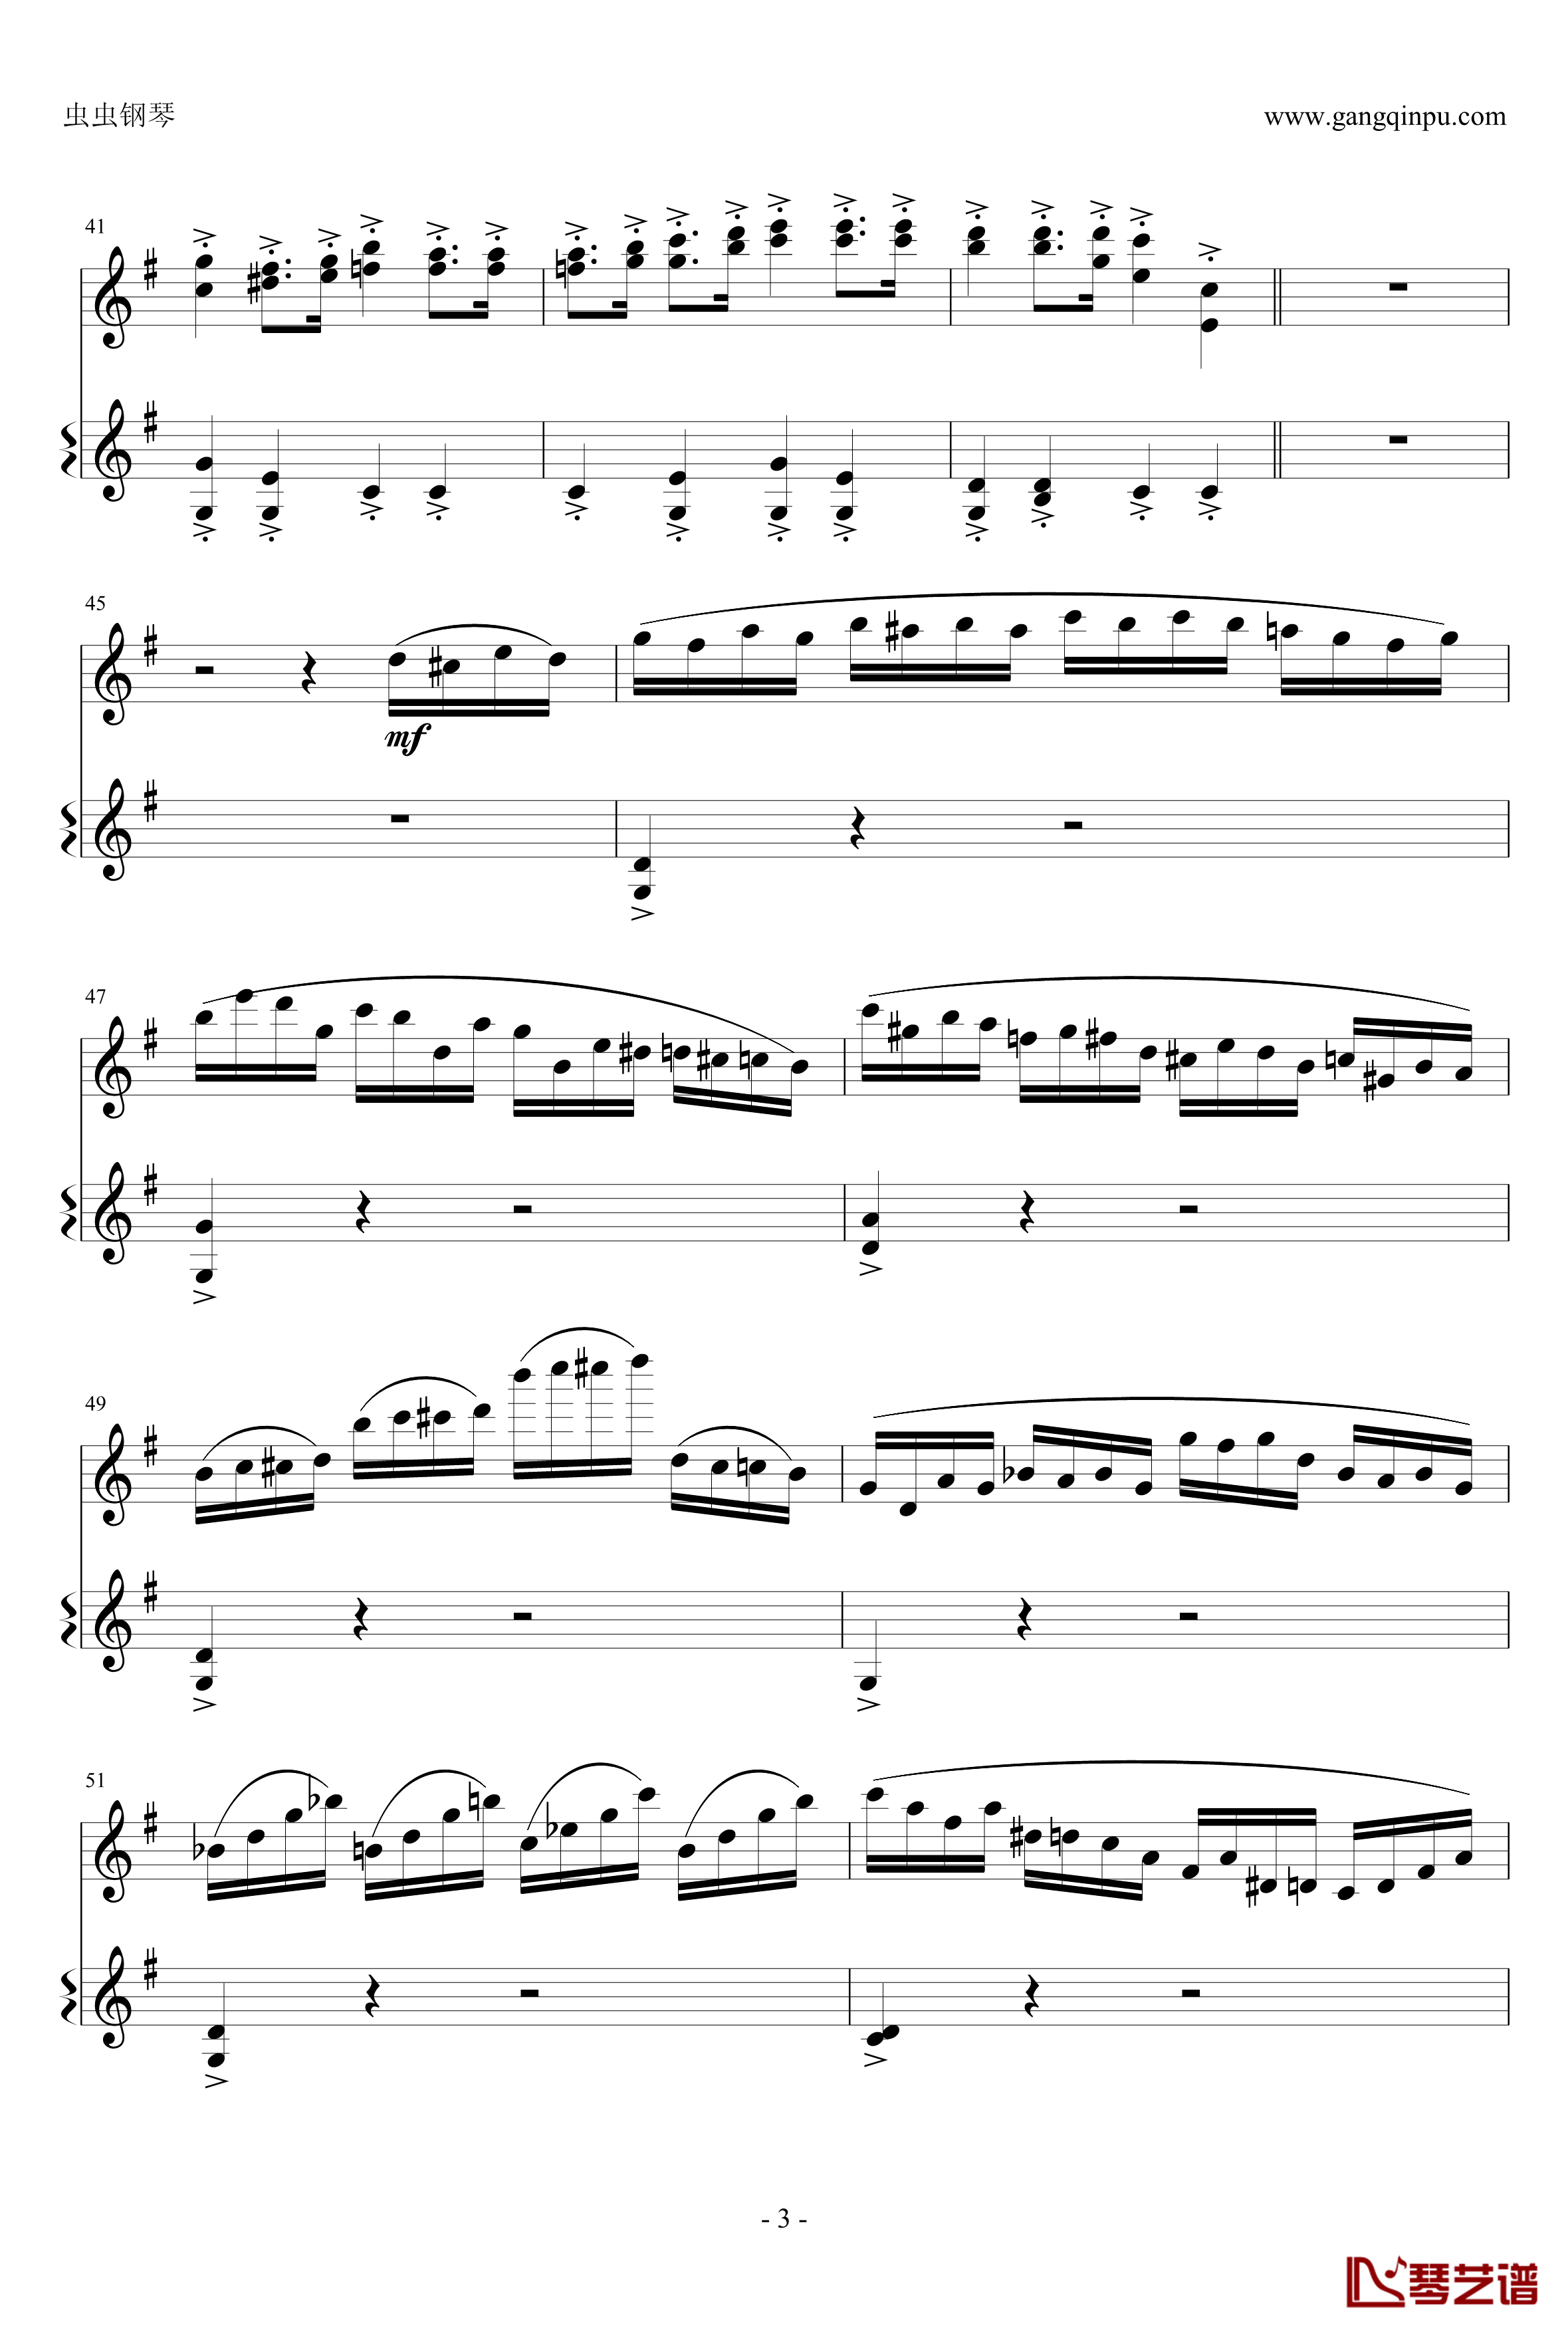 意大利国歌钢琴谱-变奏曲修改版-DXF3